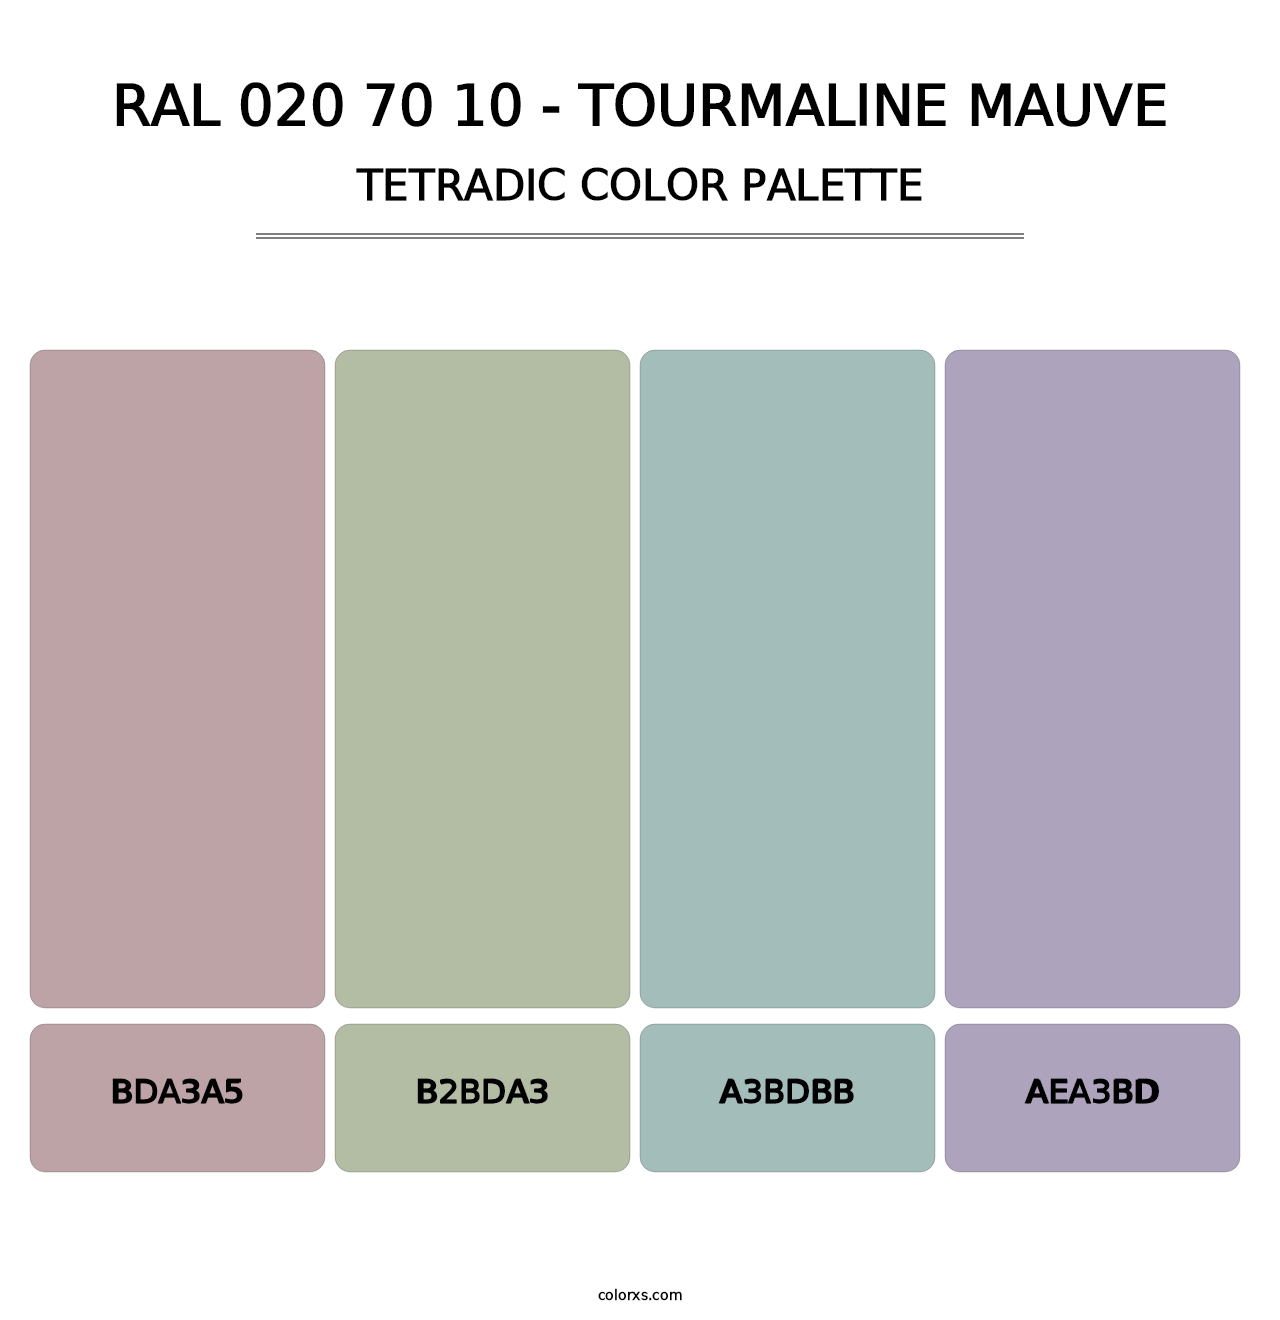 RAL 020 70 10 - Tourmaline Mauve - Tetradic Color Palette